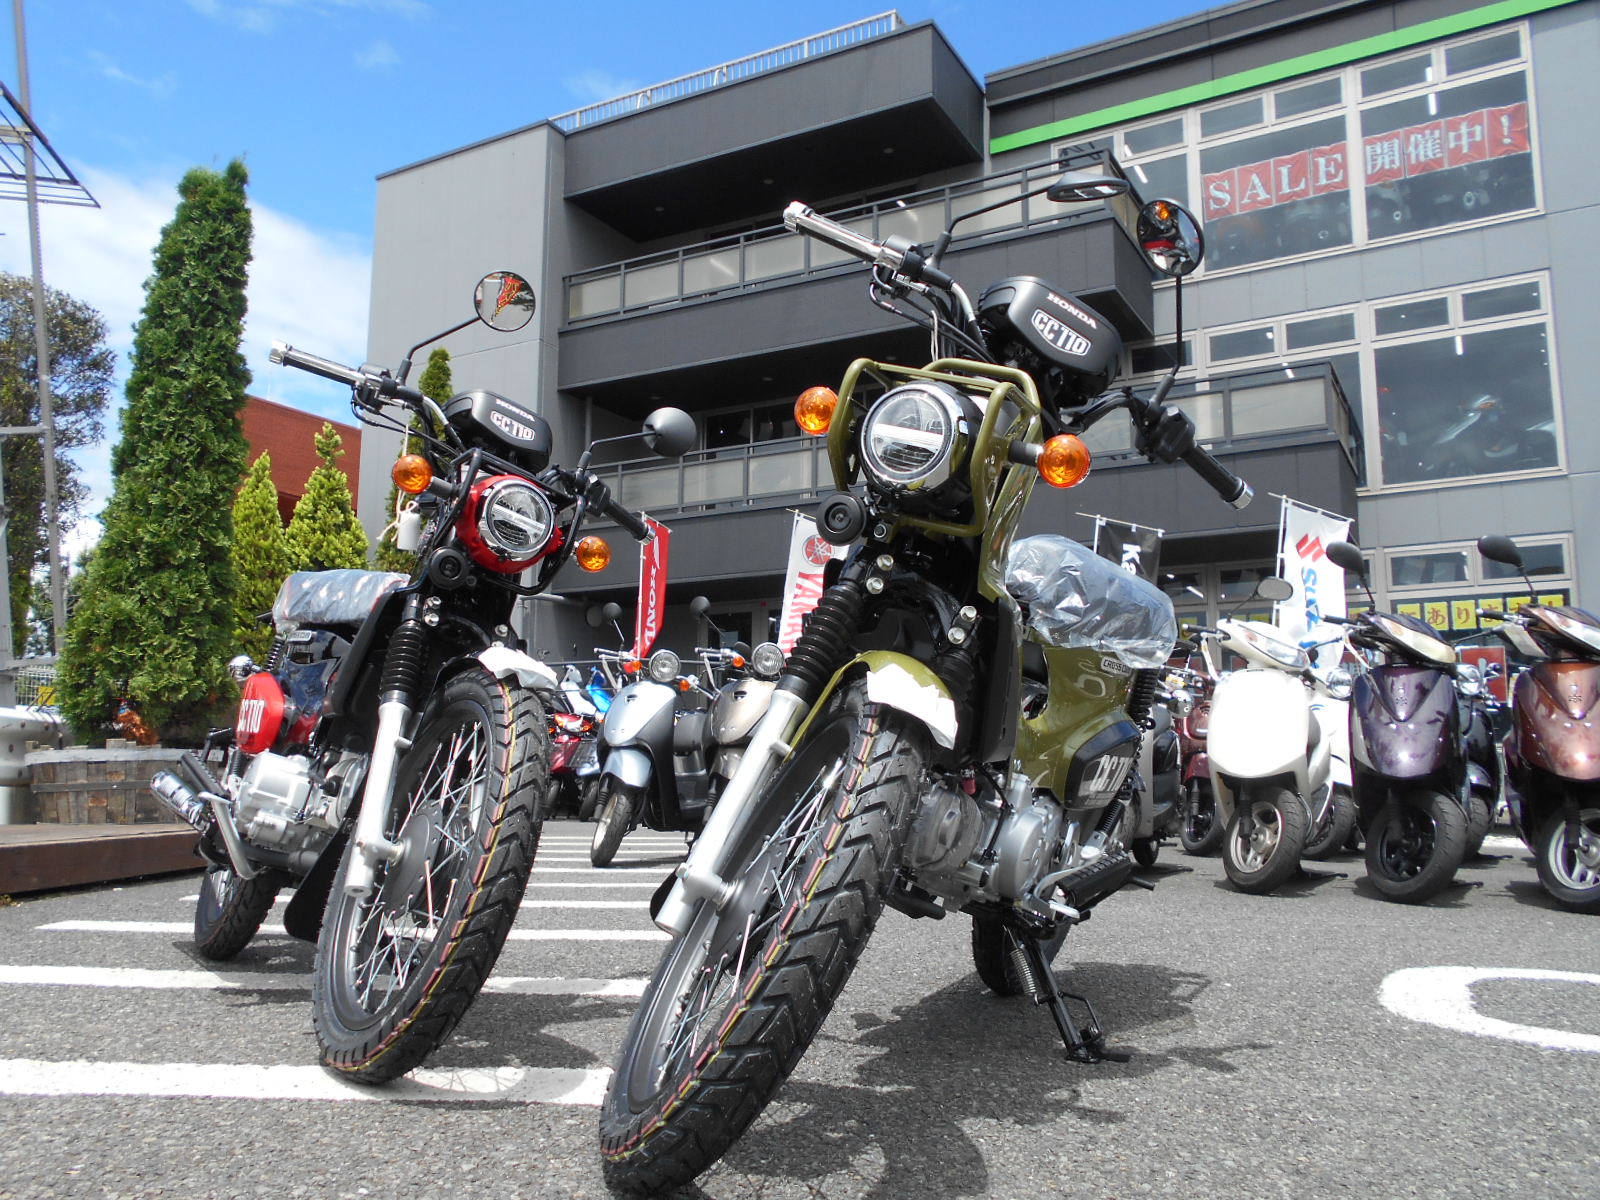 クロスカブ110即納できますよ くまモンも 最新情報 U Media ユーメディア 中古バイク 新車バイク探しの決定版 神奈川 東京でバイク探すならユーメディア